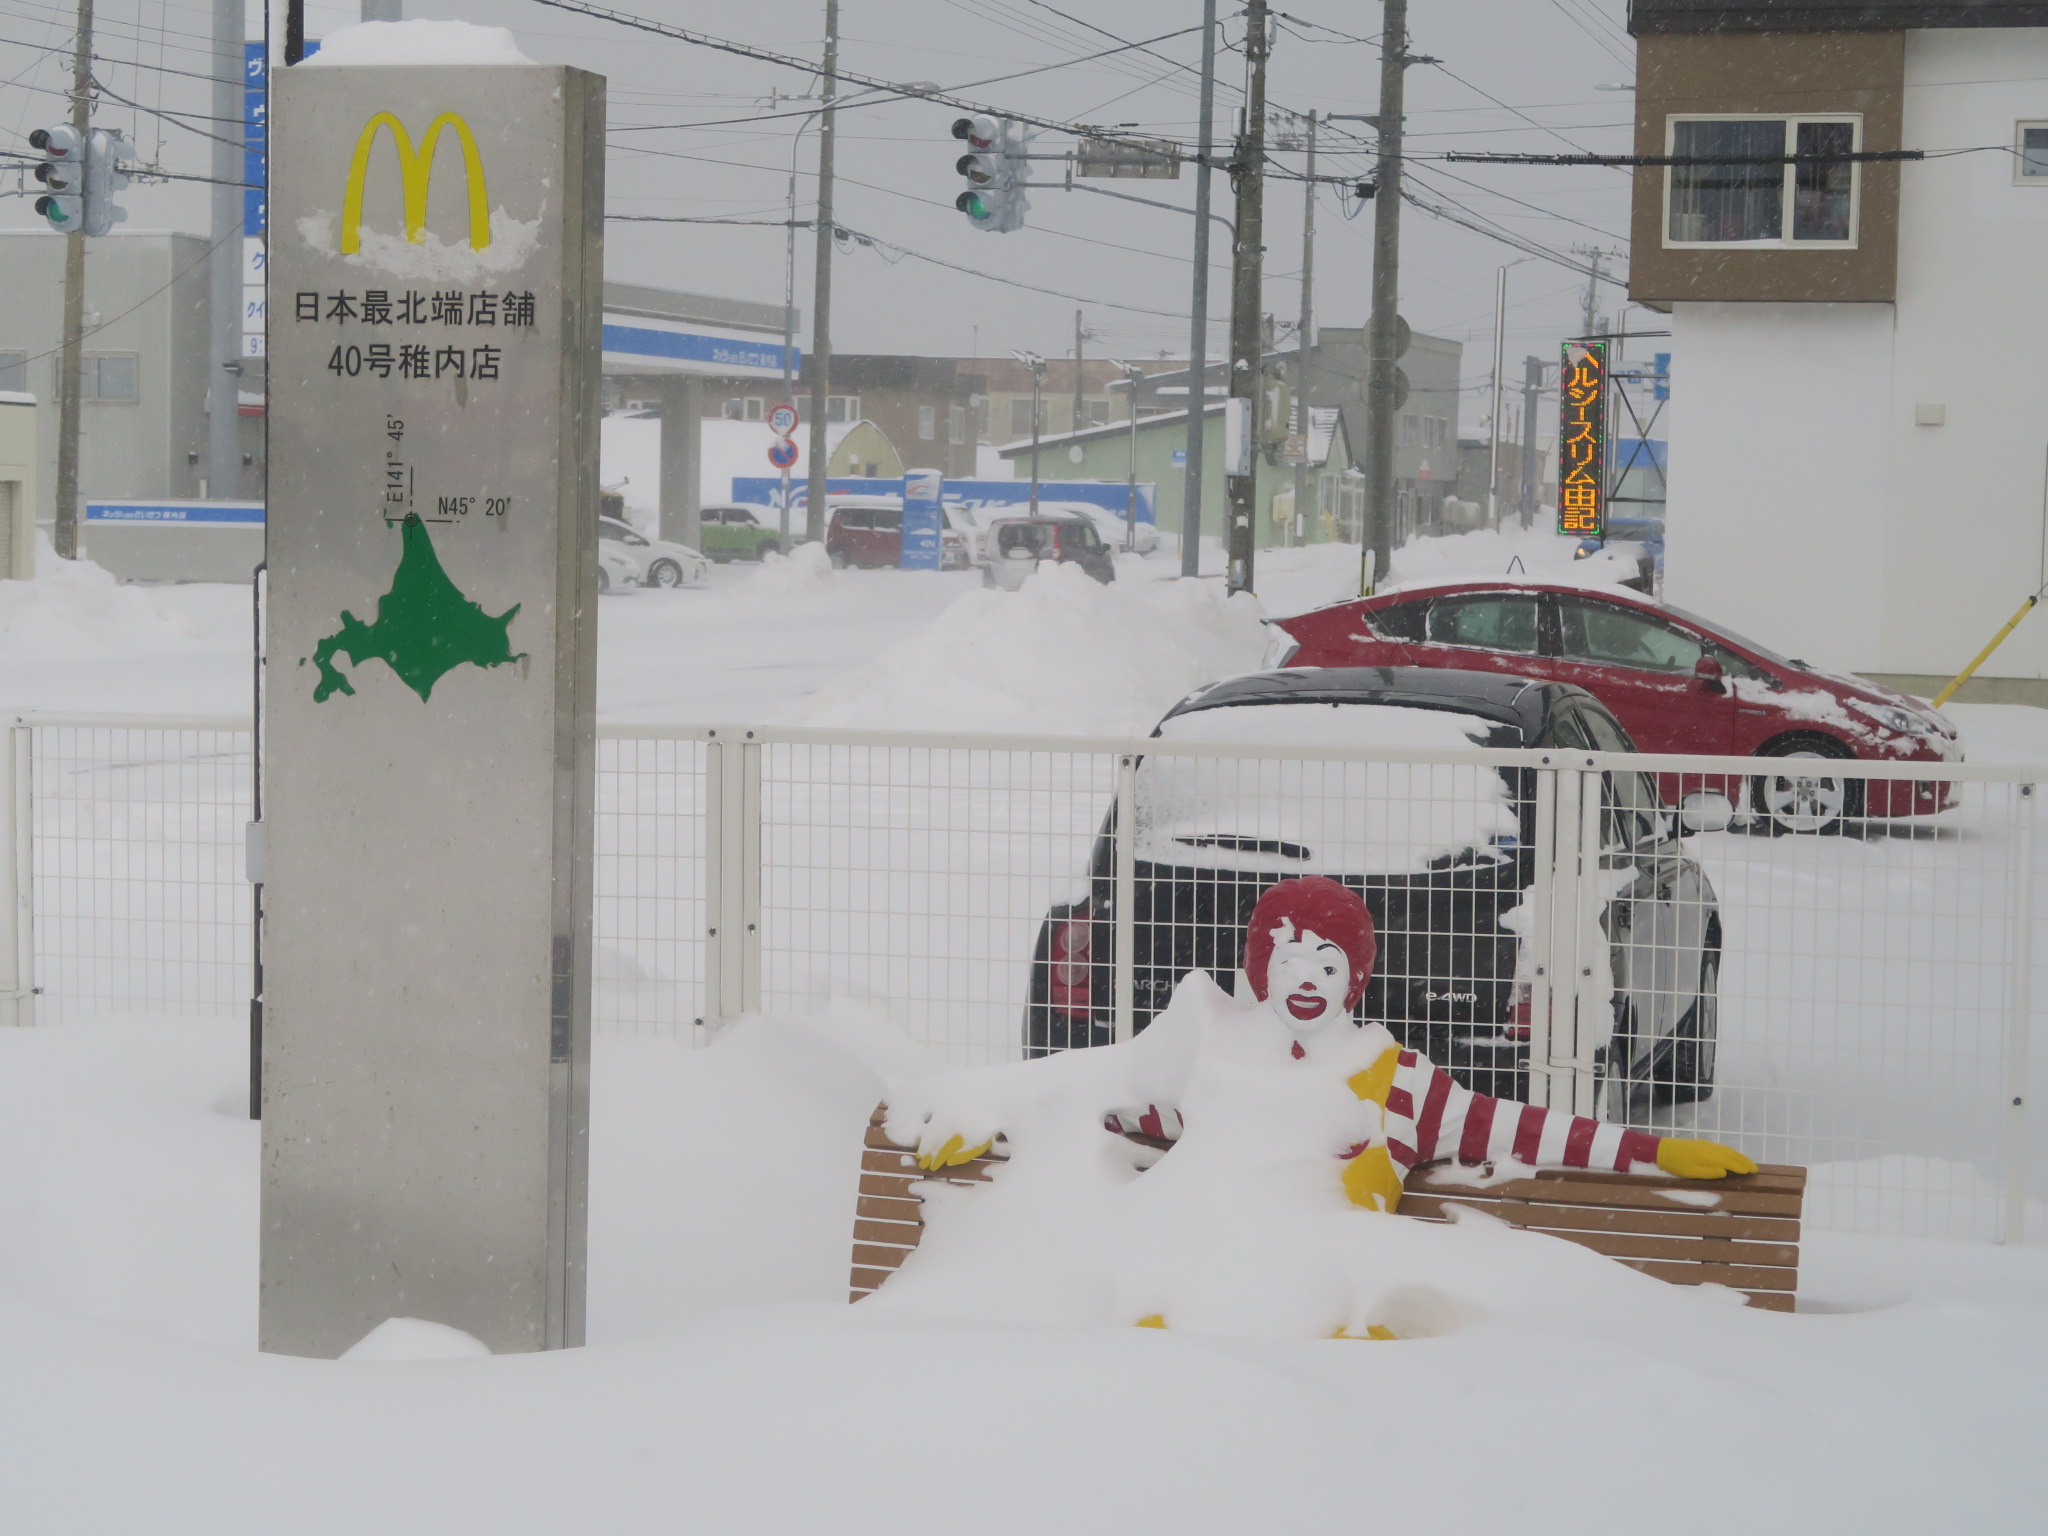  冬遊夢幻北北海道 宗谷岬紀念碑 稚內日本最北 PChome旅行團